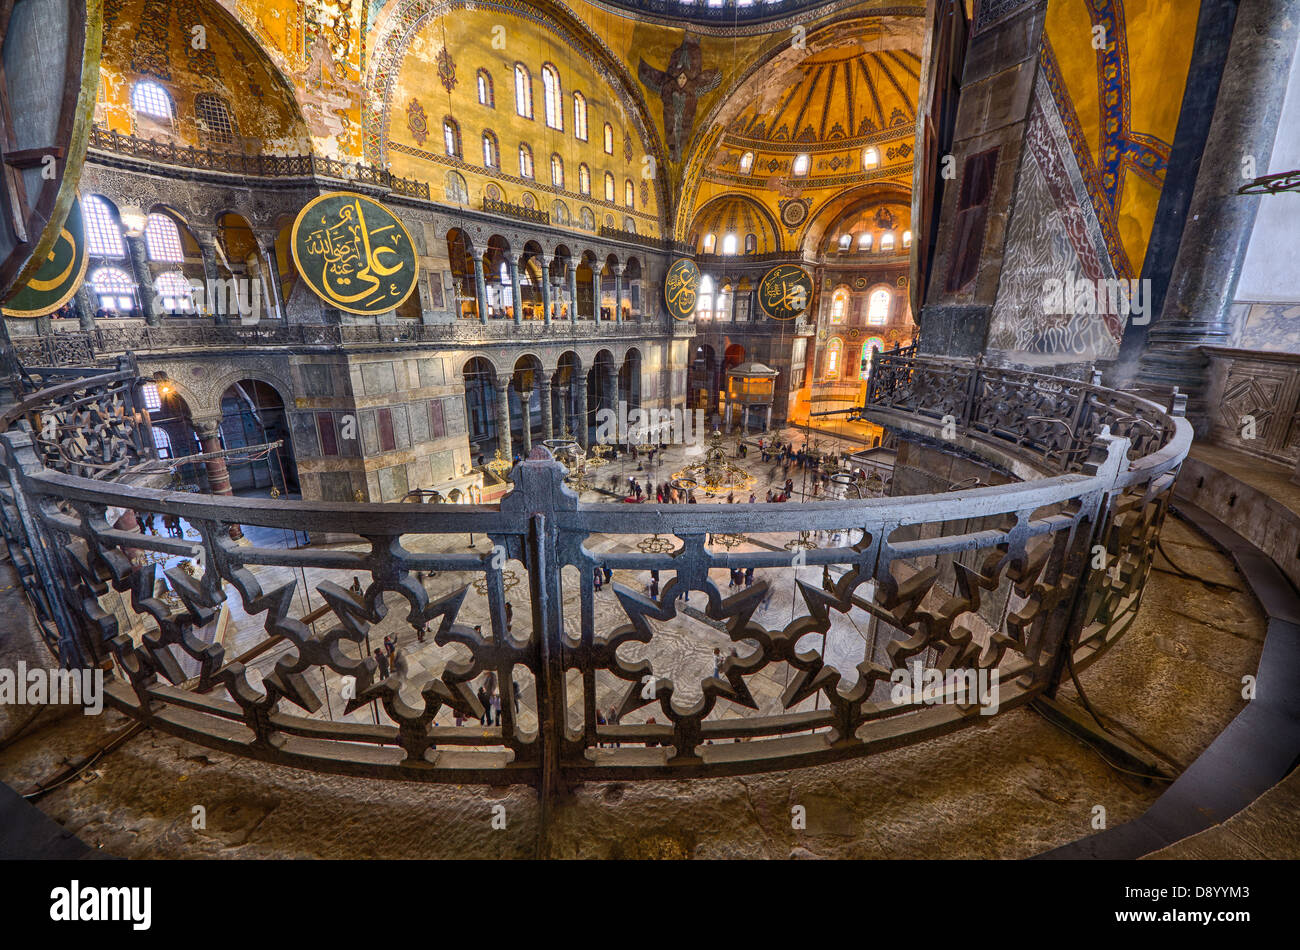 ISTANBUL - Décembre 2012 : intérieur de la mosquée Aya Sofia le 06 décembre 2012. La mosquée Aya Sofia est de 1500 ans Banque D'Images